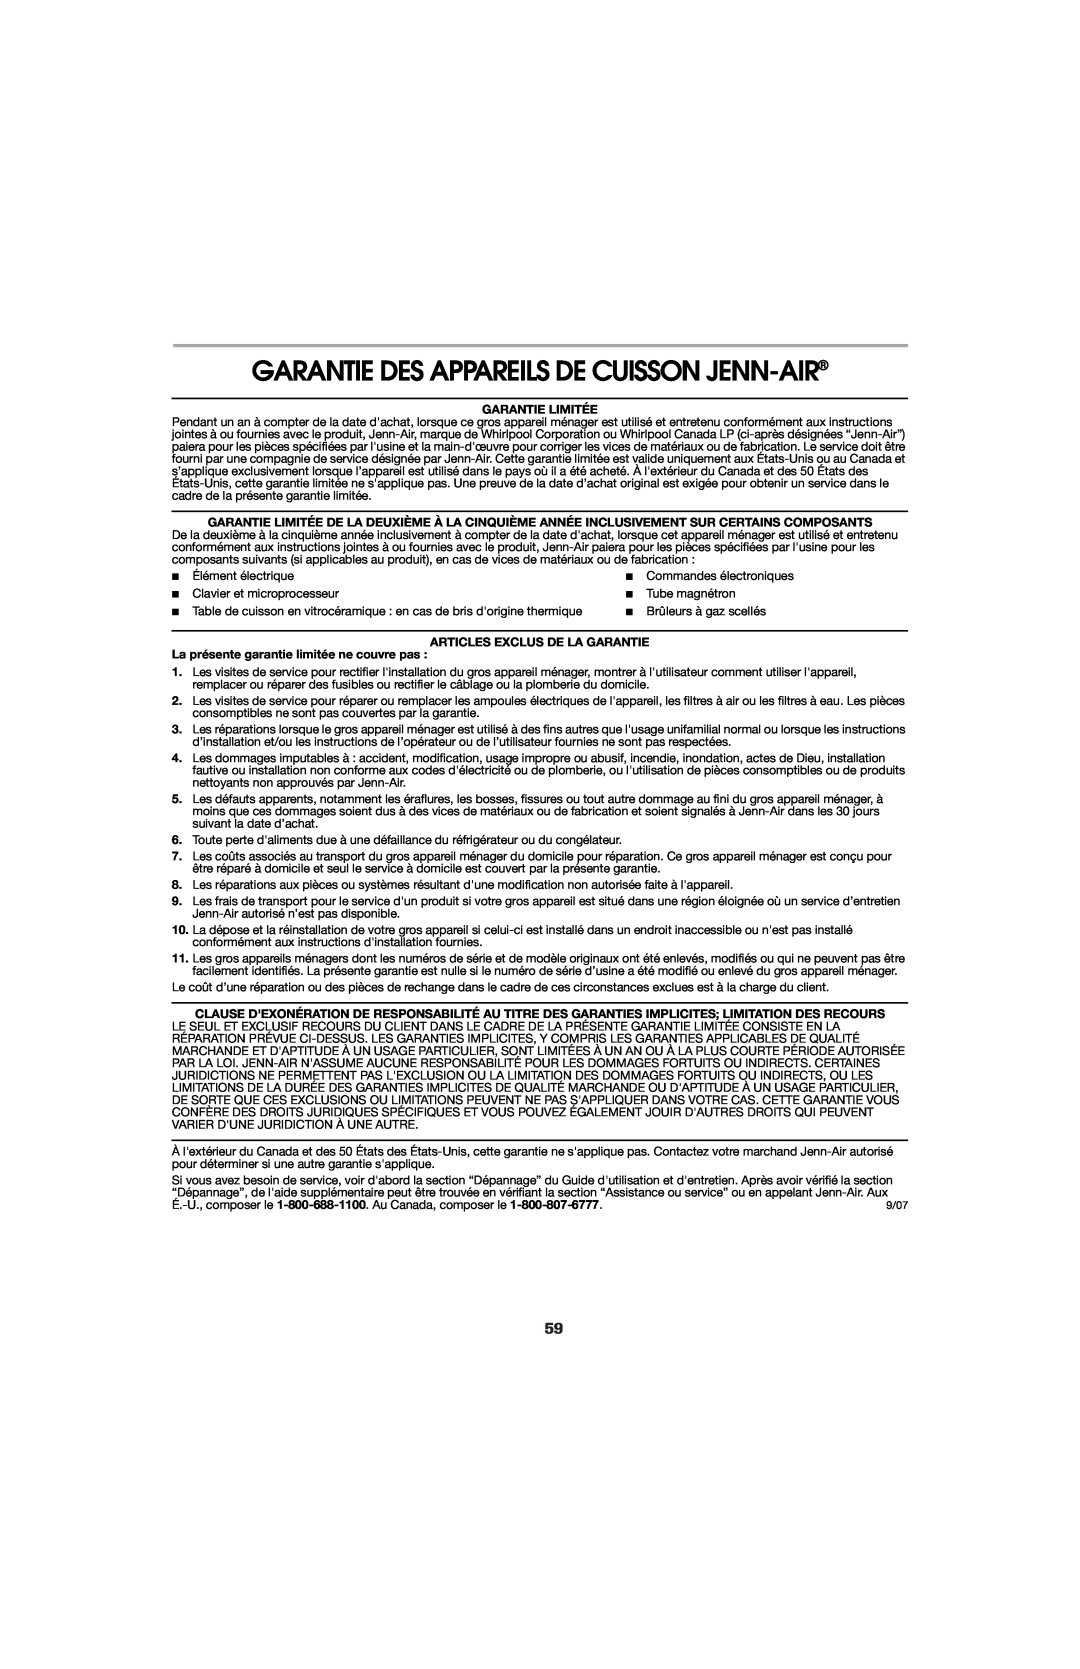 Jenn-Air 8113P714-60 Garantie Des Appareils De Cuisson Jenn-Air, Garantie Limitée, Articles Exclus De La Garantie 